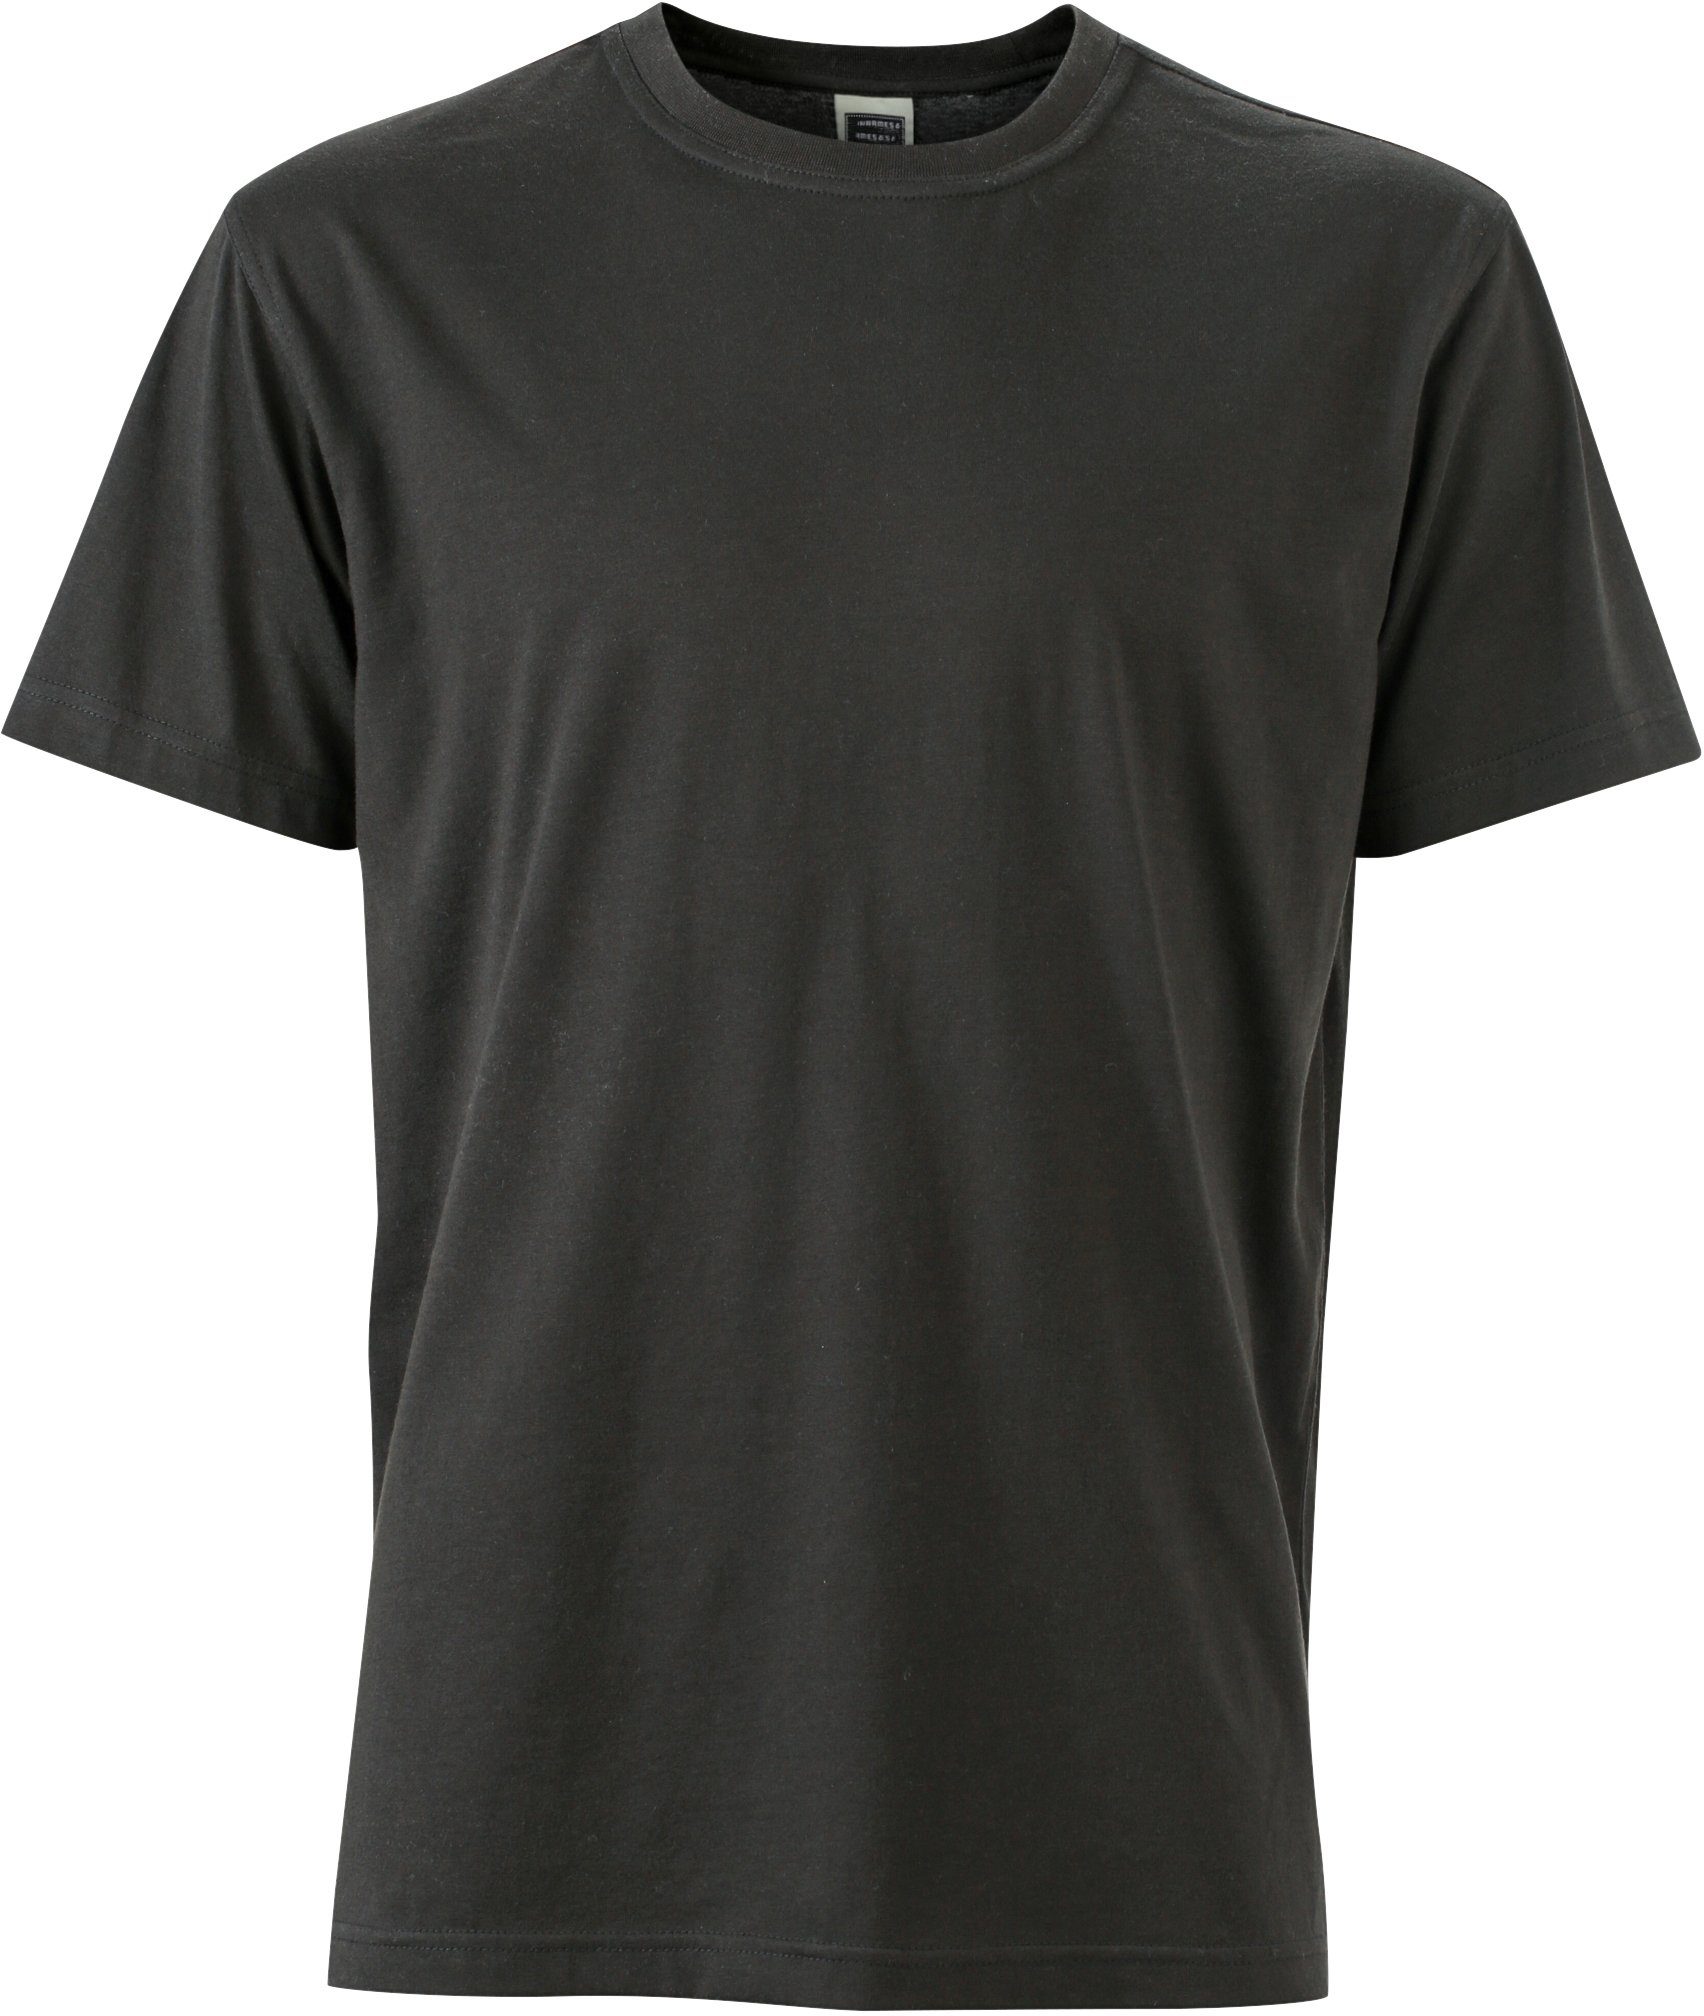 James & Nicholson T-Shirt Workwear T-Shirt FaS50838 auch in großen Größen Black | T-Shirts